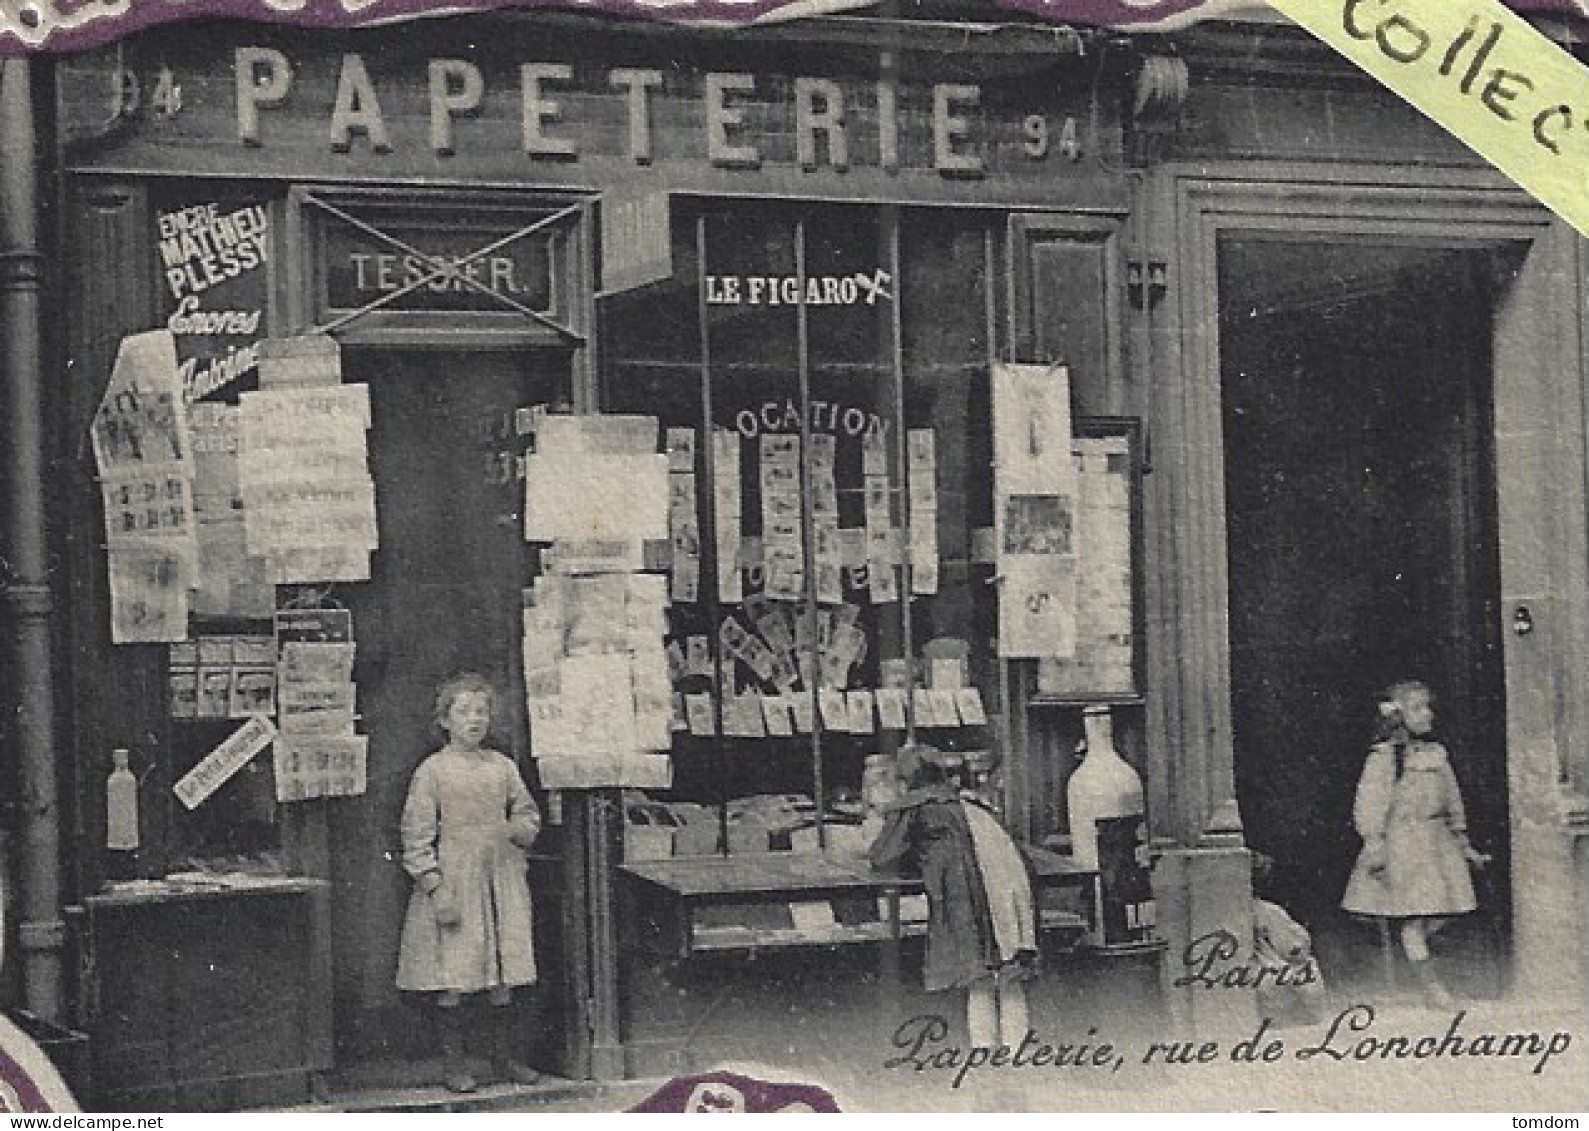 Paris***(75016)**Thème:Marchand De Cartes Postales éditeur Papeterie Tessier 94 Rue De Longchamp - Paris (16)